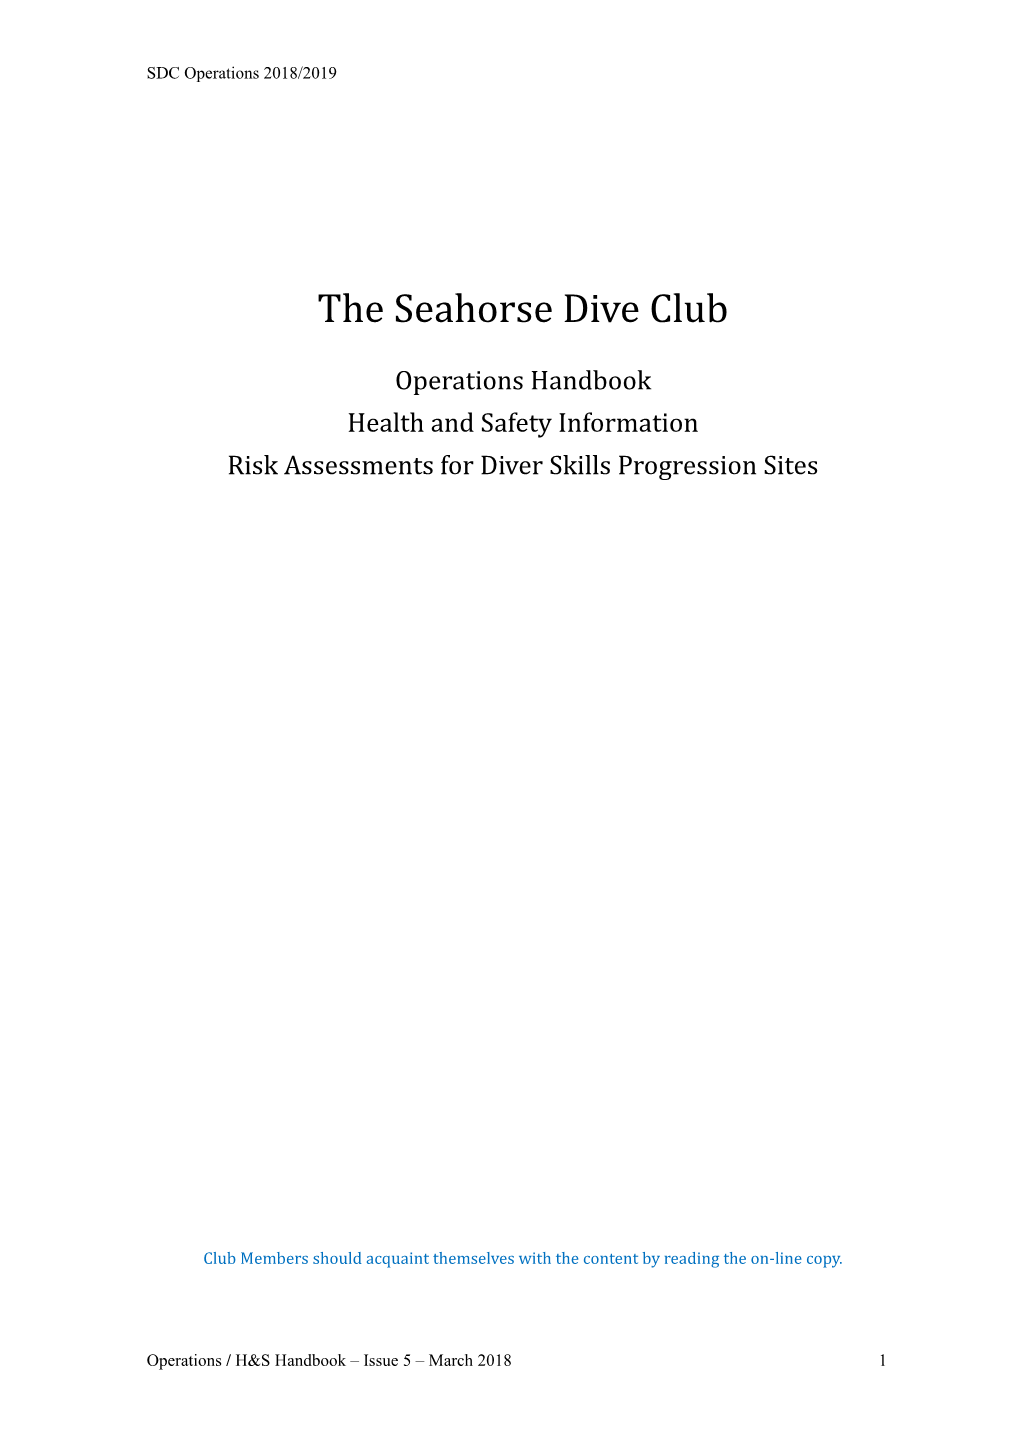 The Seahorse Dive Club